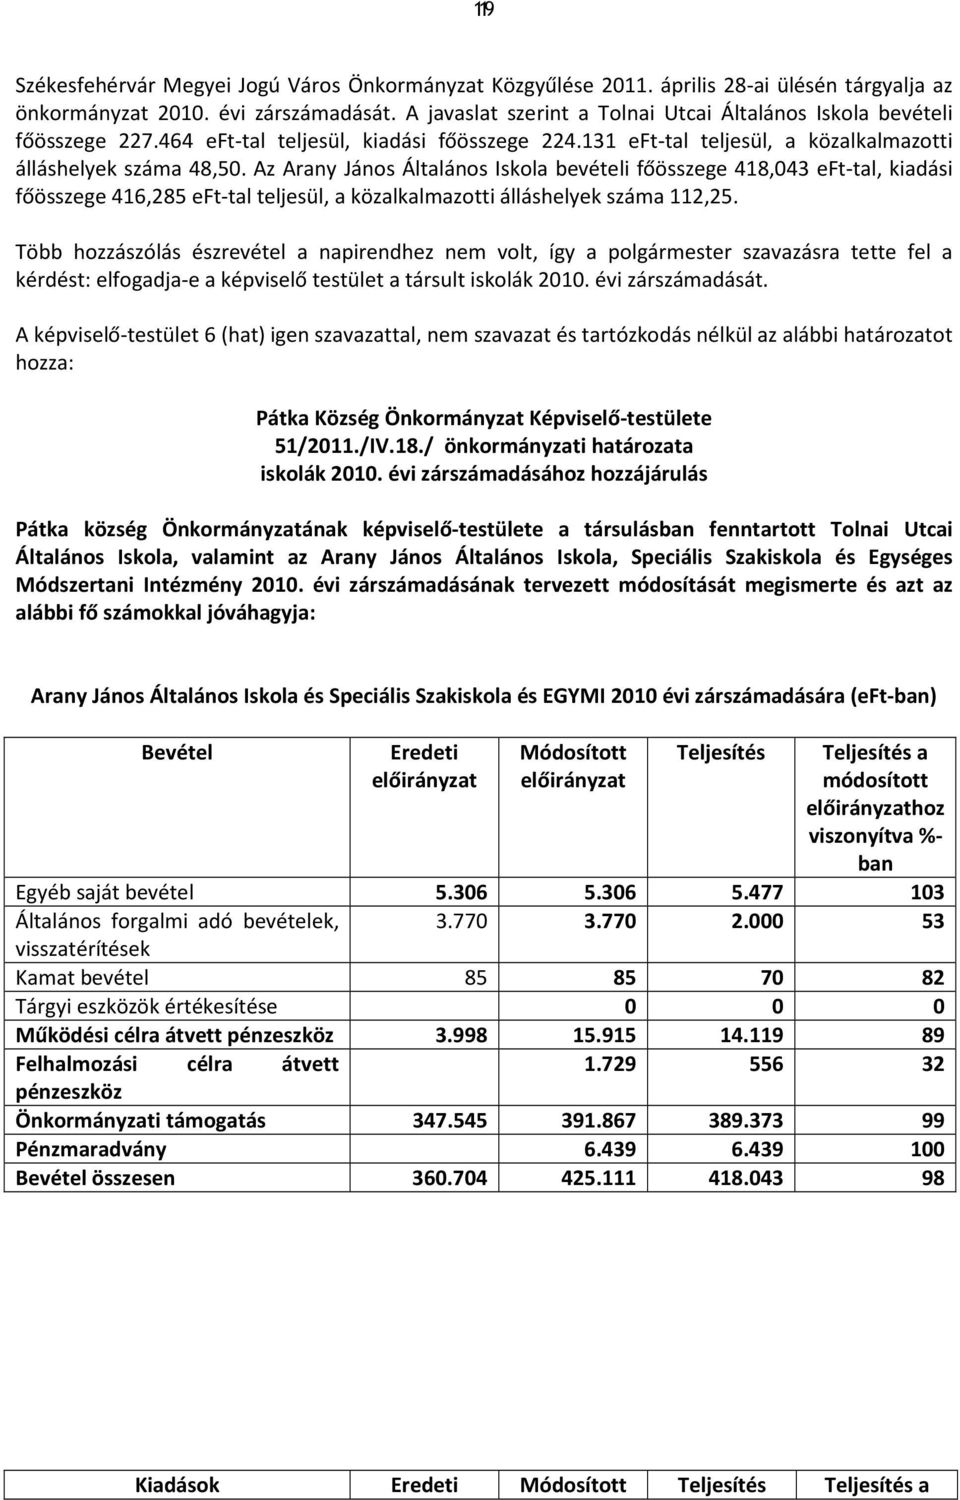 Az Arany János Általános Iskola bevételi főösszege 418,043 eft-tal, kiadási főösszege 416,285 eft-tal teljesül, a közalkalmazotti álláshelyek száma 112,25.